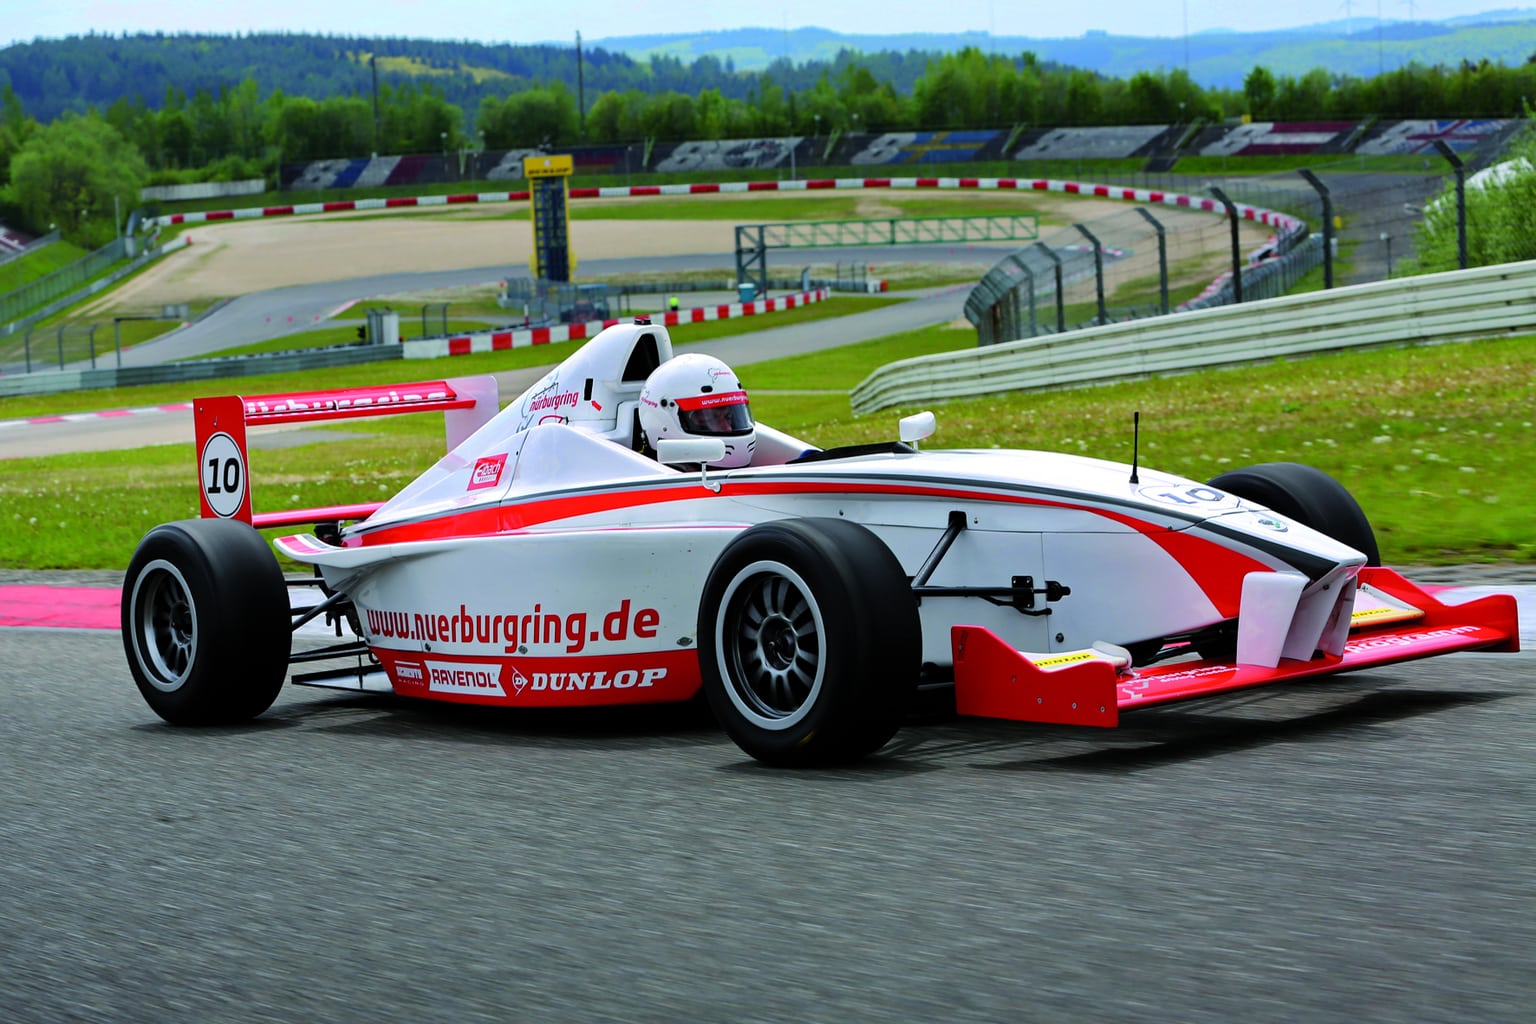 Met een formule een auto op de Nürburgring rijden is een van de grootste adrenalinekicks in Duitsland